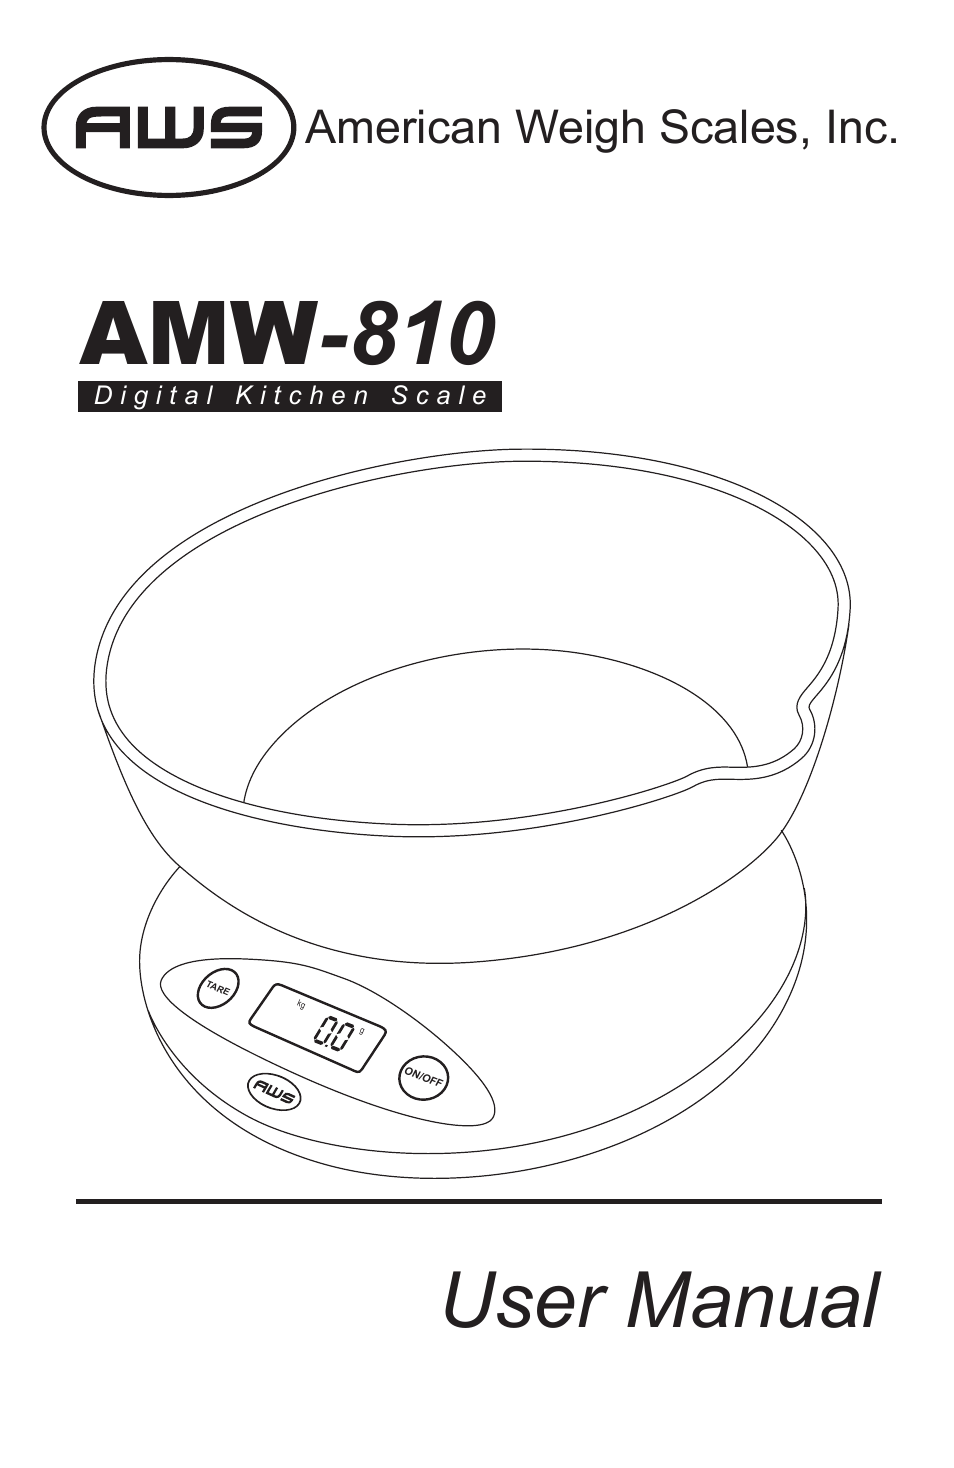 AMW-810-2k